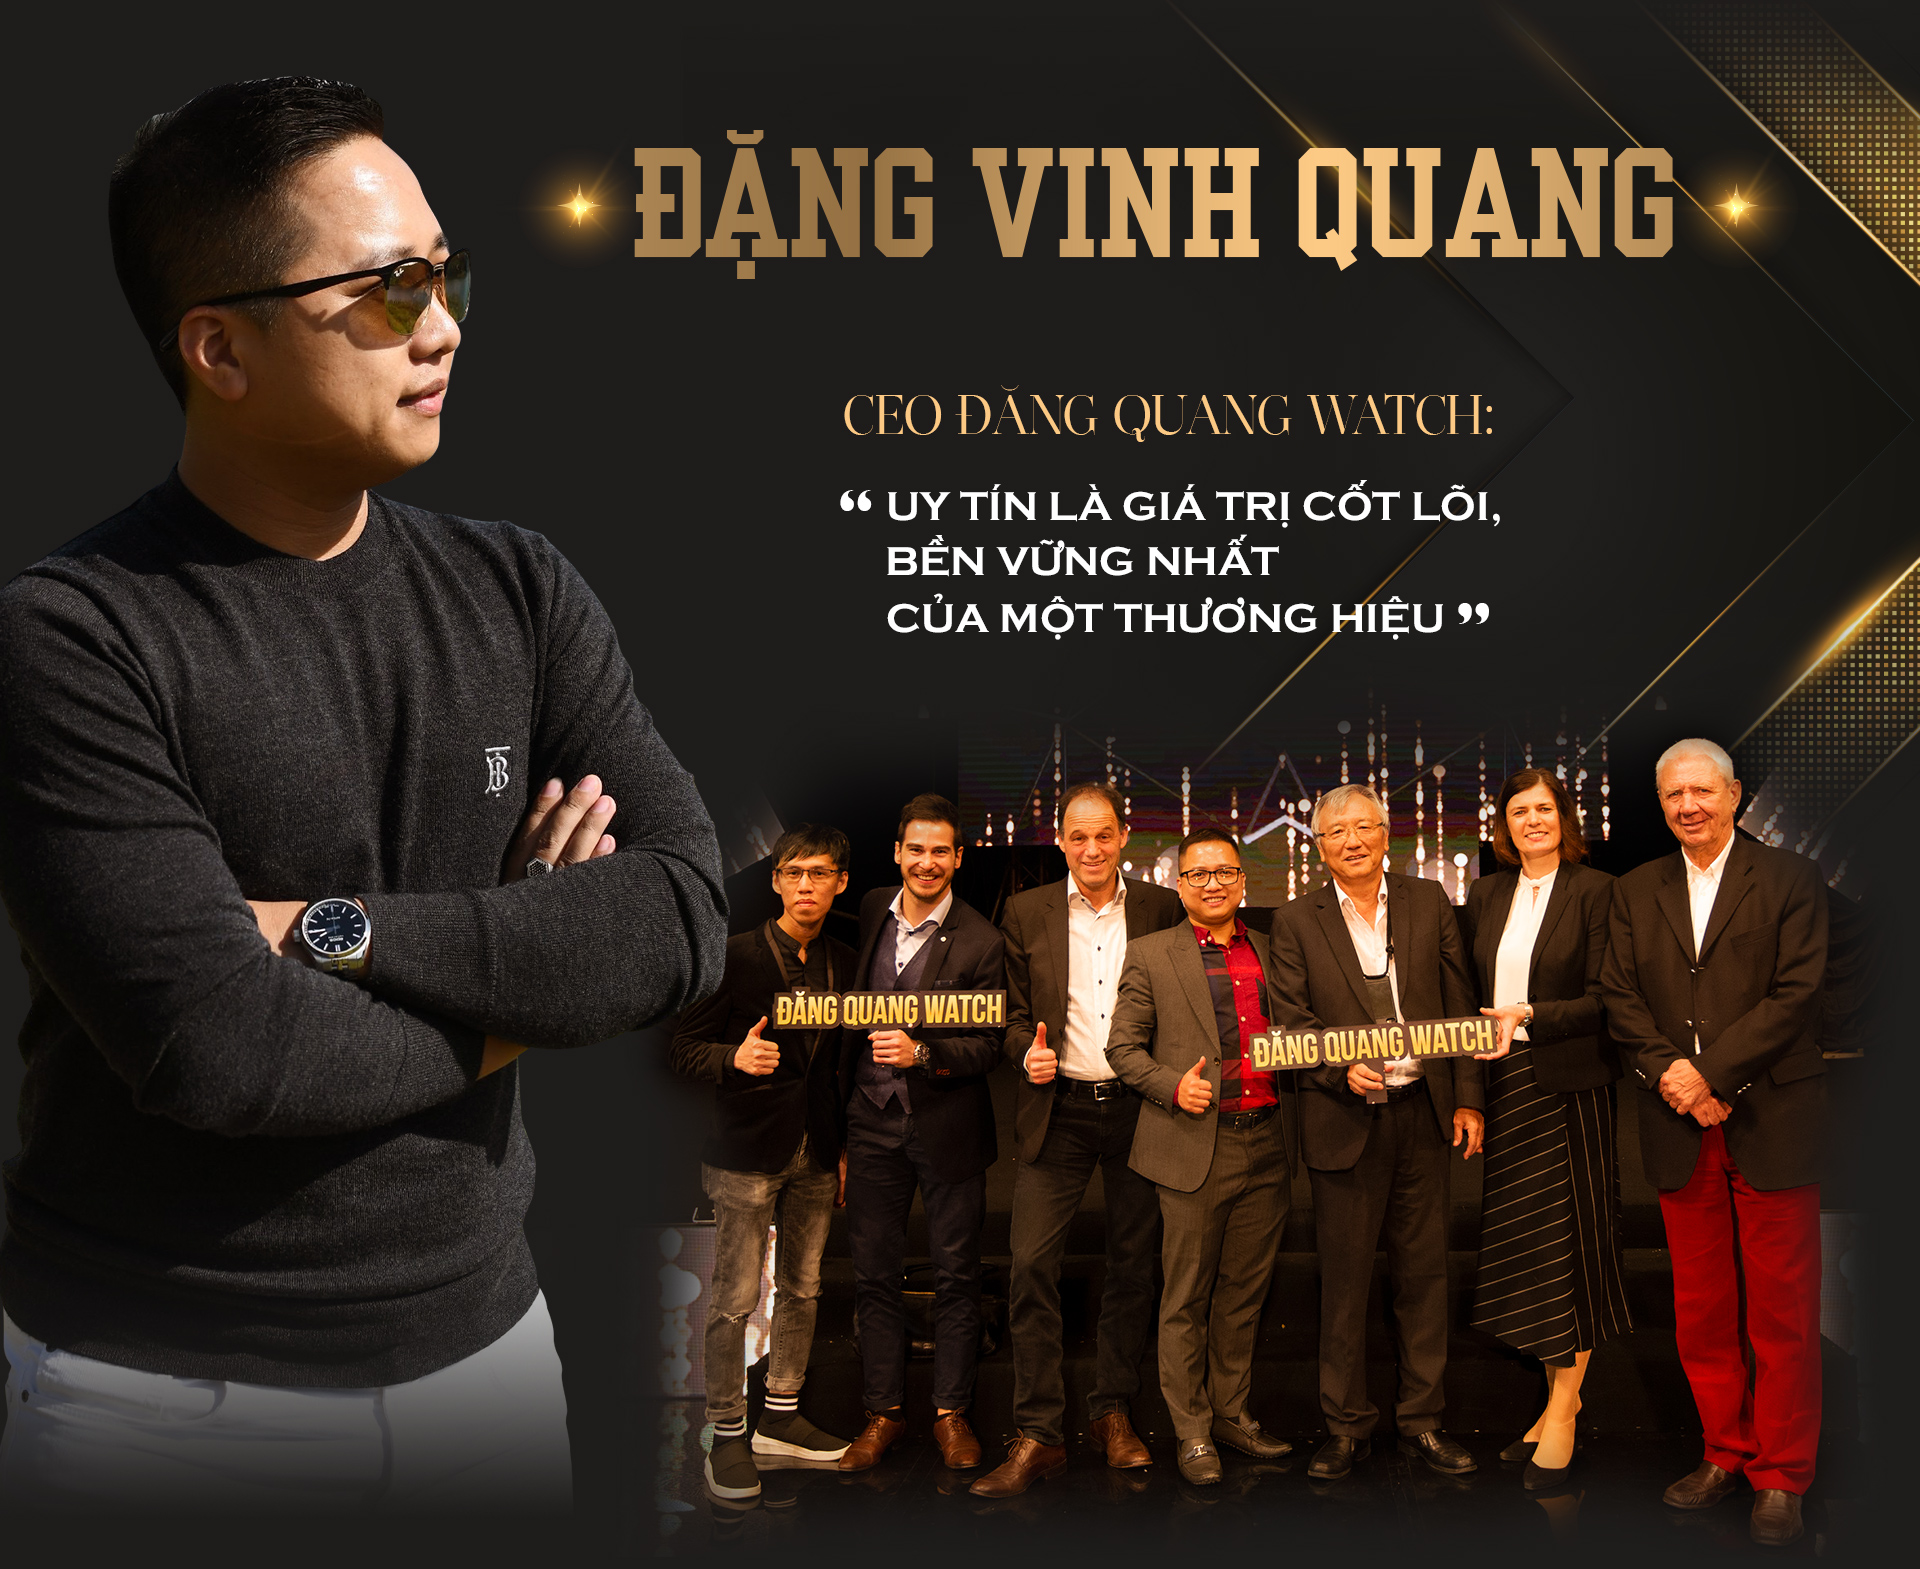 Đặng Vinh Quang – CEO Đăng Quang Watch: “Uy tín là giá trị cốt lõi, bền vững nhất của một thương hiệu” - 1